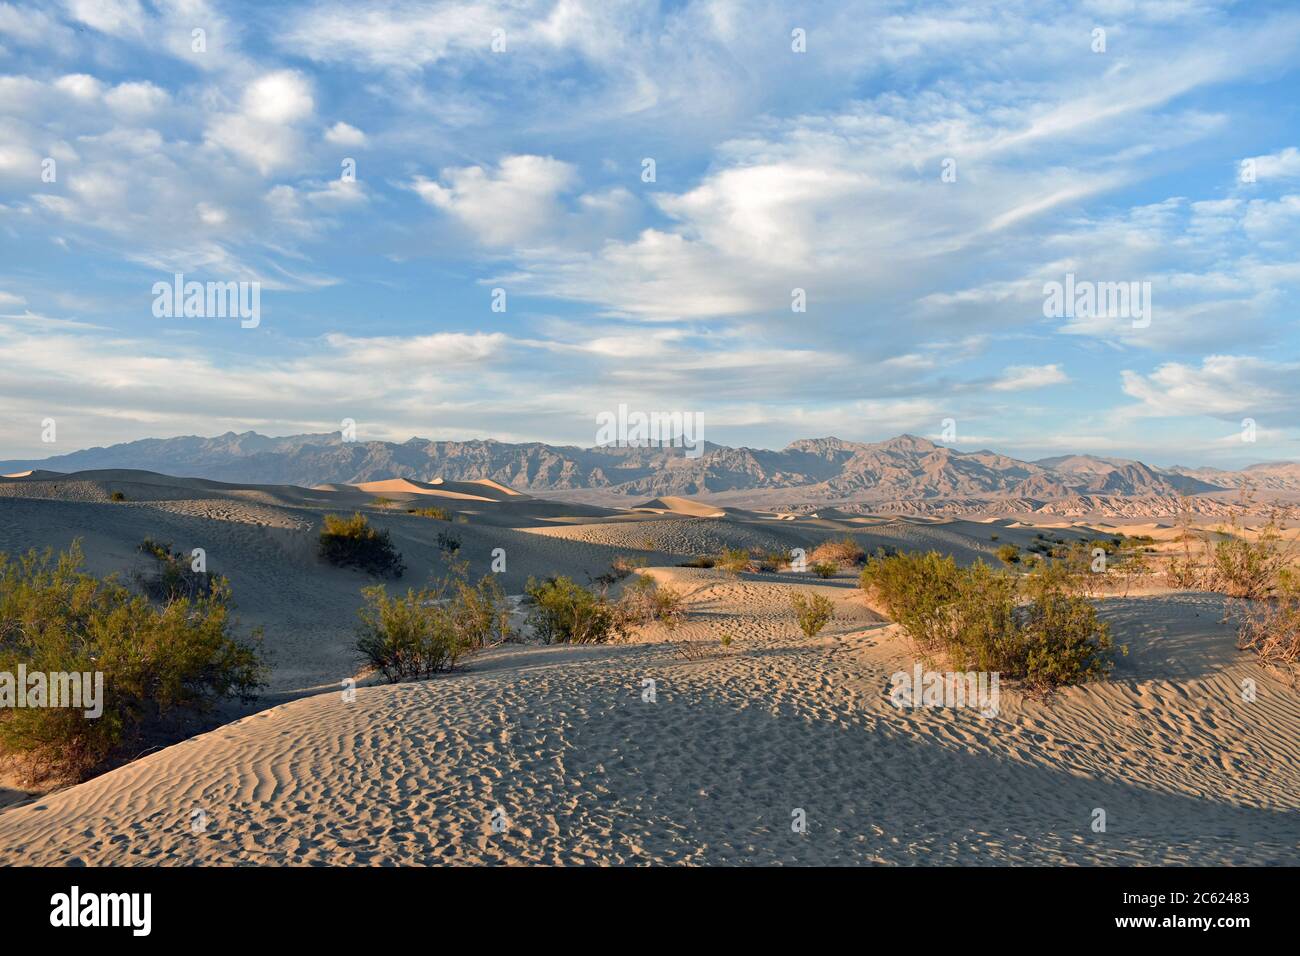 Coucher de soleil sur les dunes de sable de Mesquite Flat dans le parc national de la Vallée de la mort, Californie. Arbres Mesquite et empreintes de pas dans le sable et les montagnes derrière les dunes. Banque D'Images